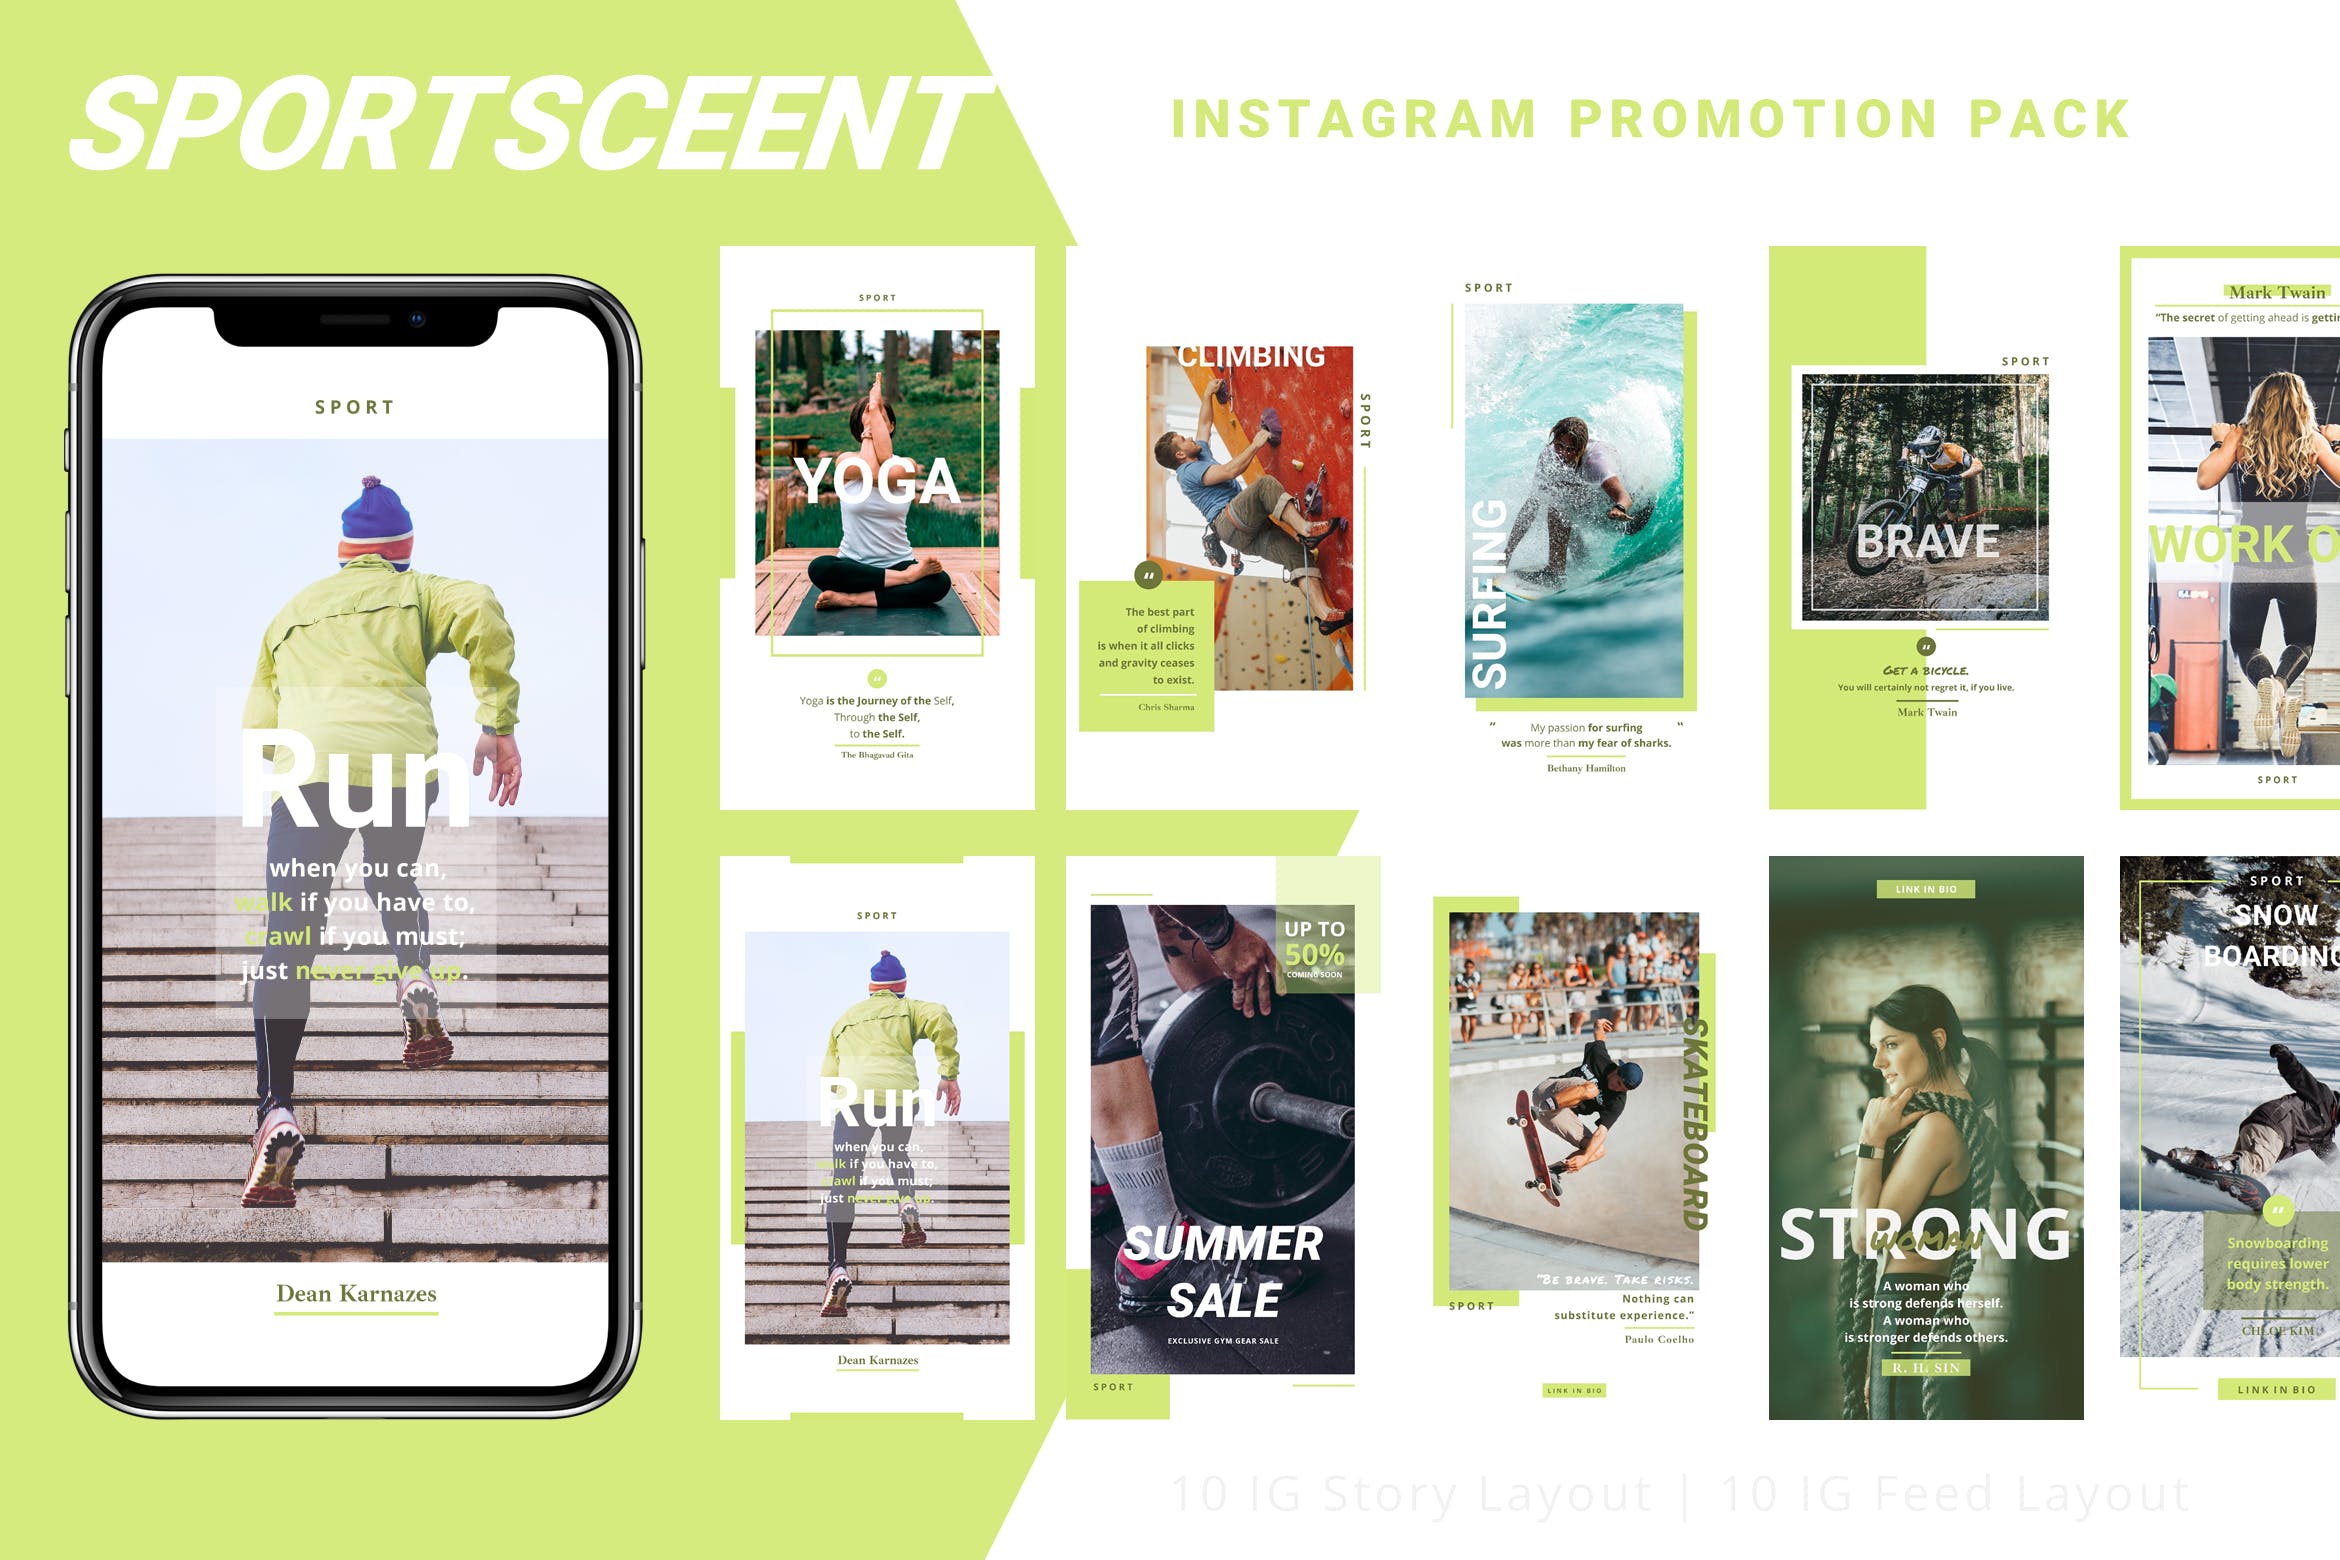 体育运动主题Instagram品牌故事设计模板第一素材精选 Sportsceent – Instagram Story Pack插图